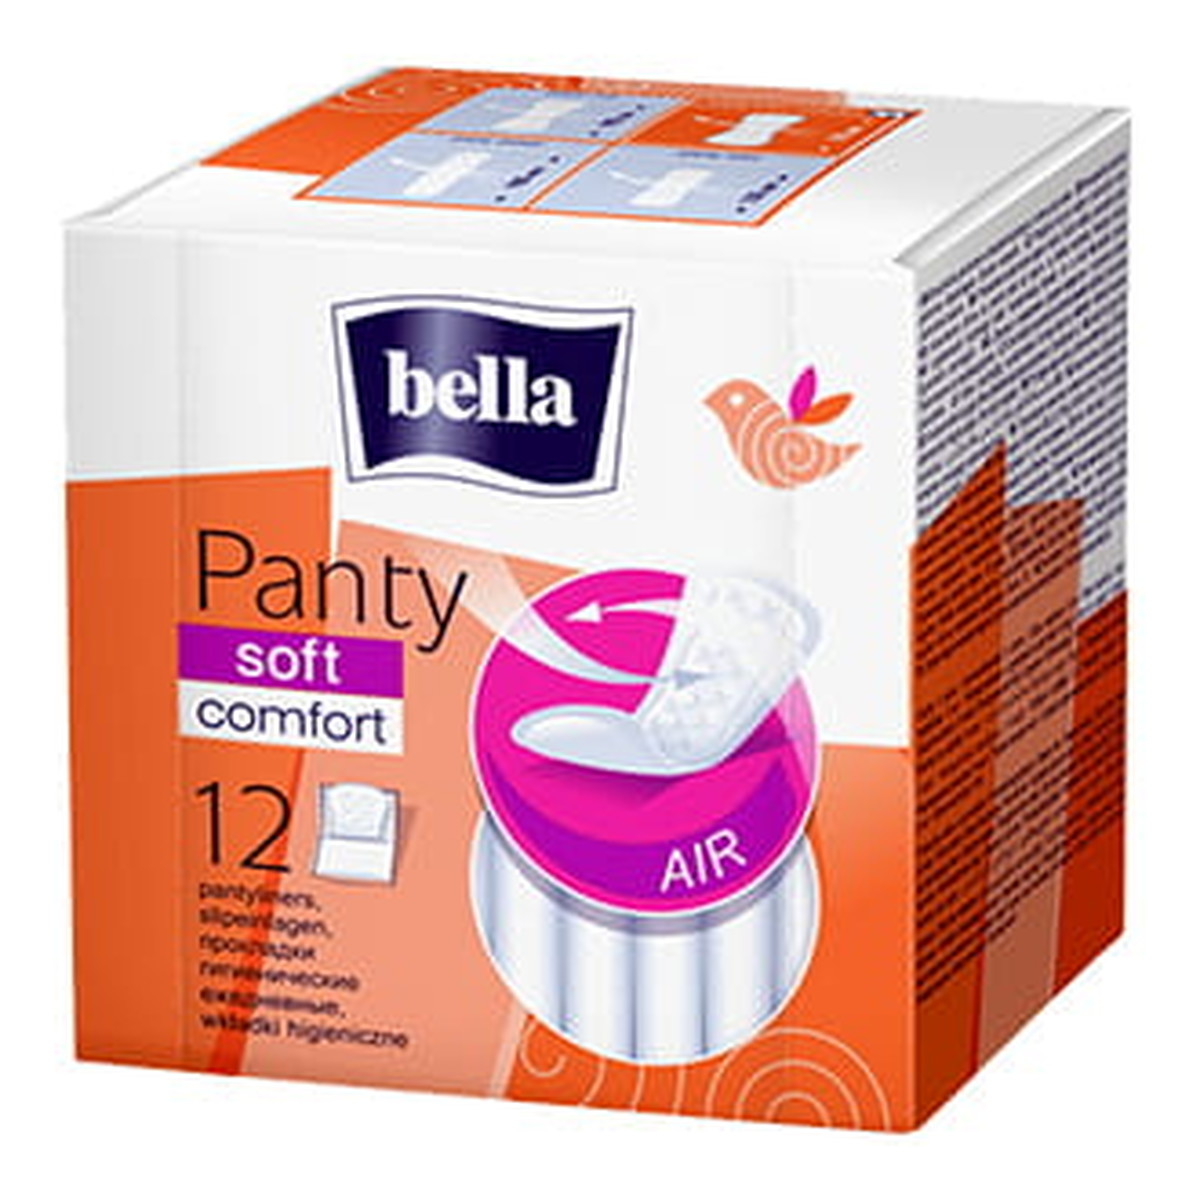 Bella Panty Soft Comfort Wkładki higieniczne 12 szt.